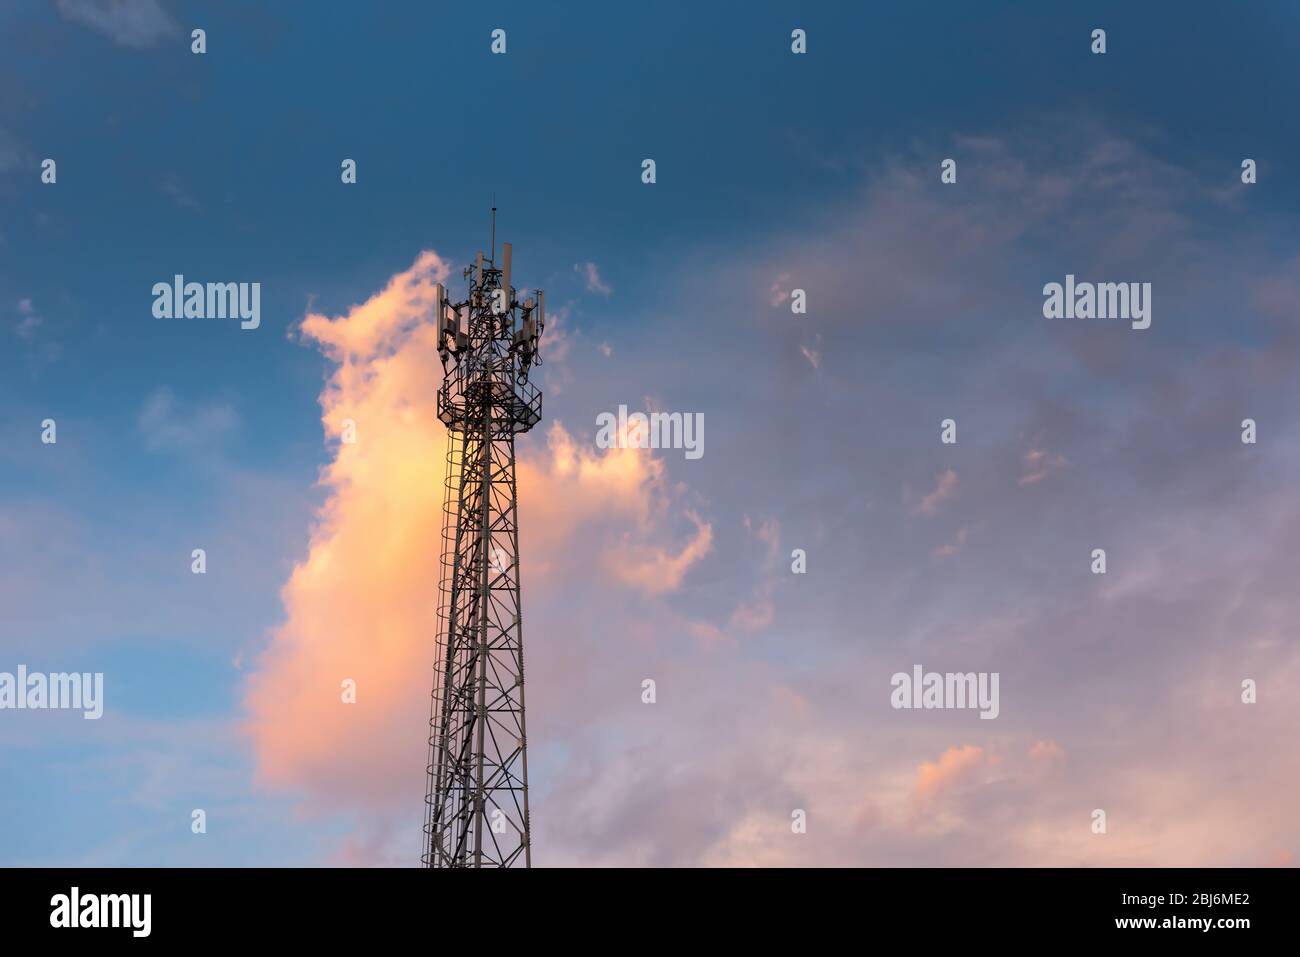 Kommunikation Antennenturm für Telekommunikationsnetz gegen Blue Sky Hintergrund bei Sonnenaufgang. Technologie Mobilfunk- und Übertragungsverbindung von T Stockfoto